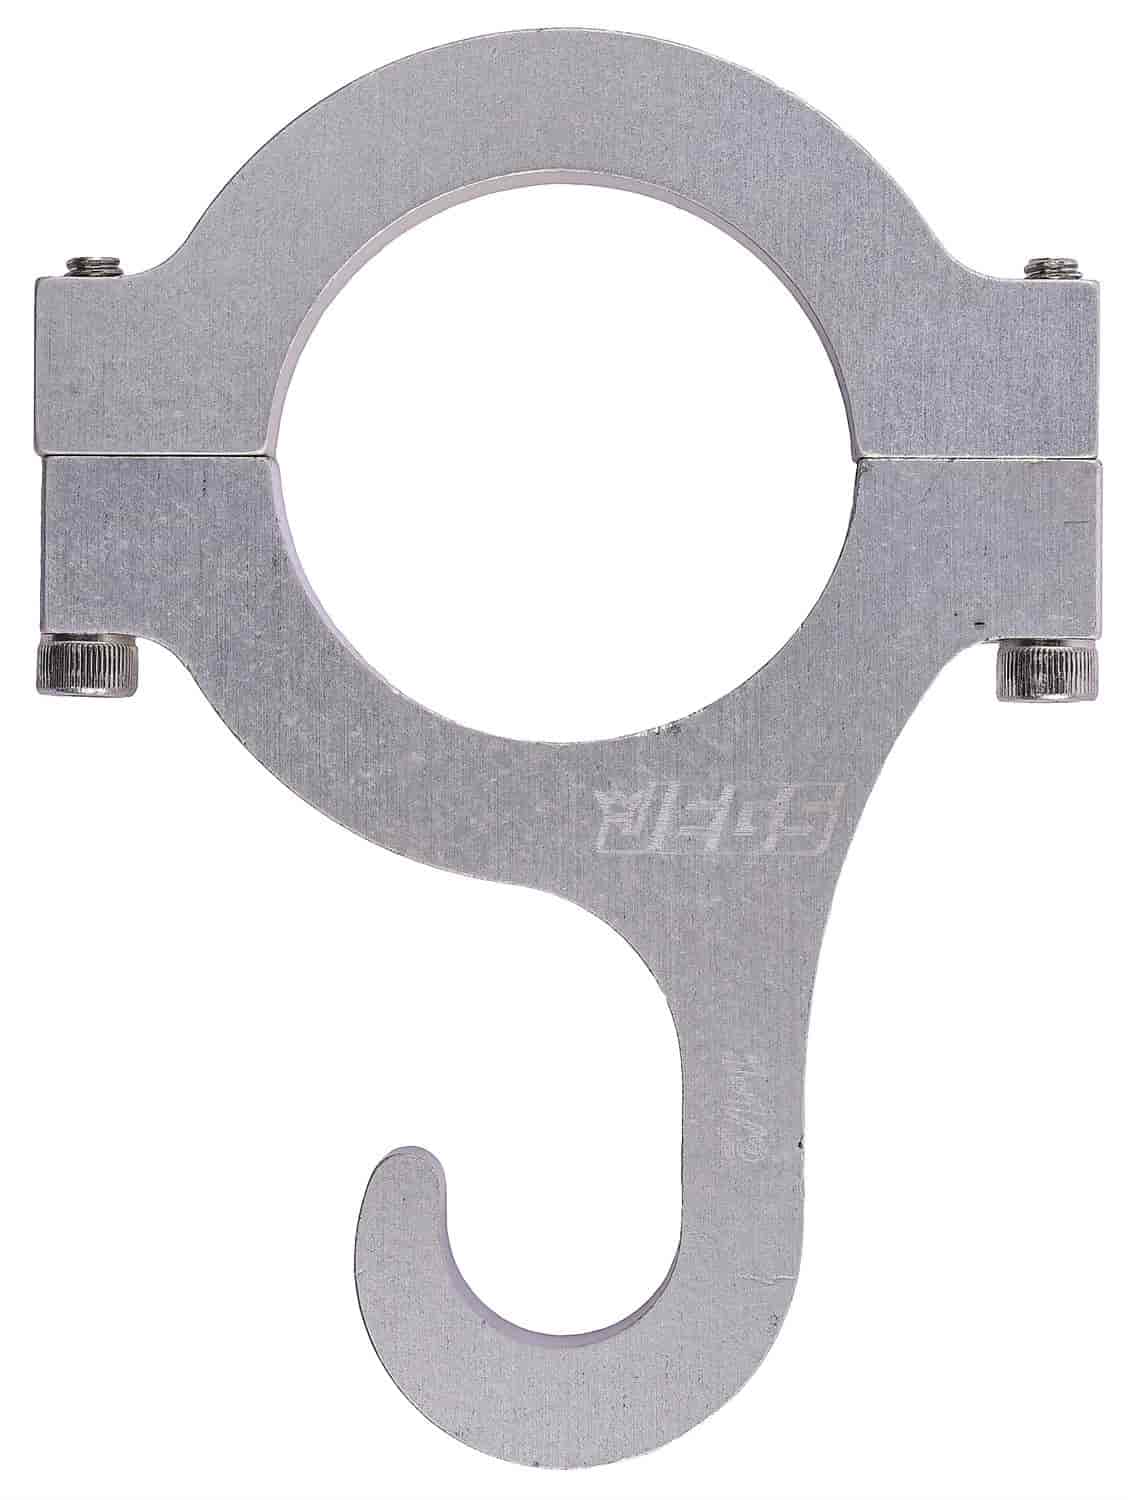 Billet Aluminum Roll Bar Mount Helmet Hook Fits 1-1/2" Diameter Roll Bars